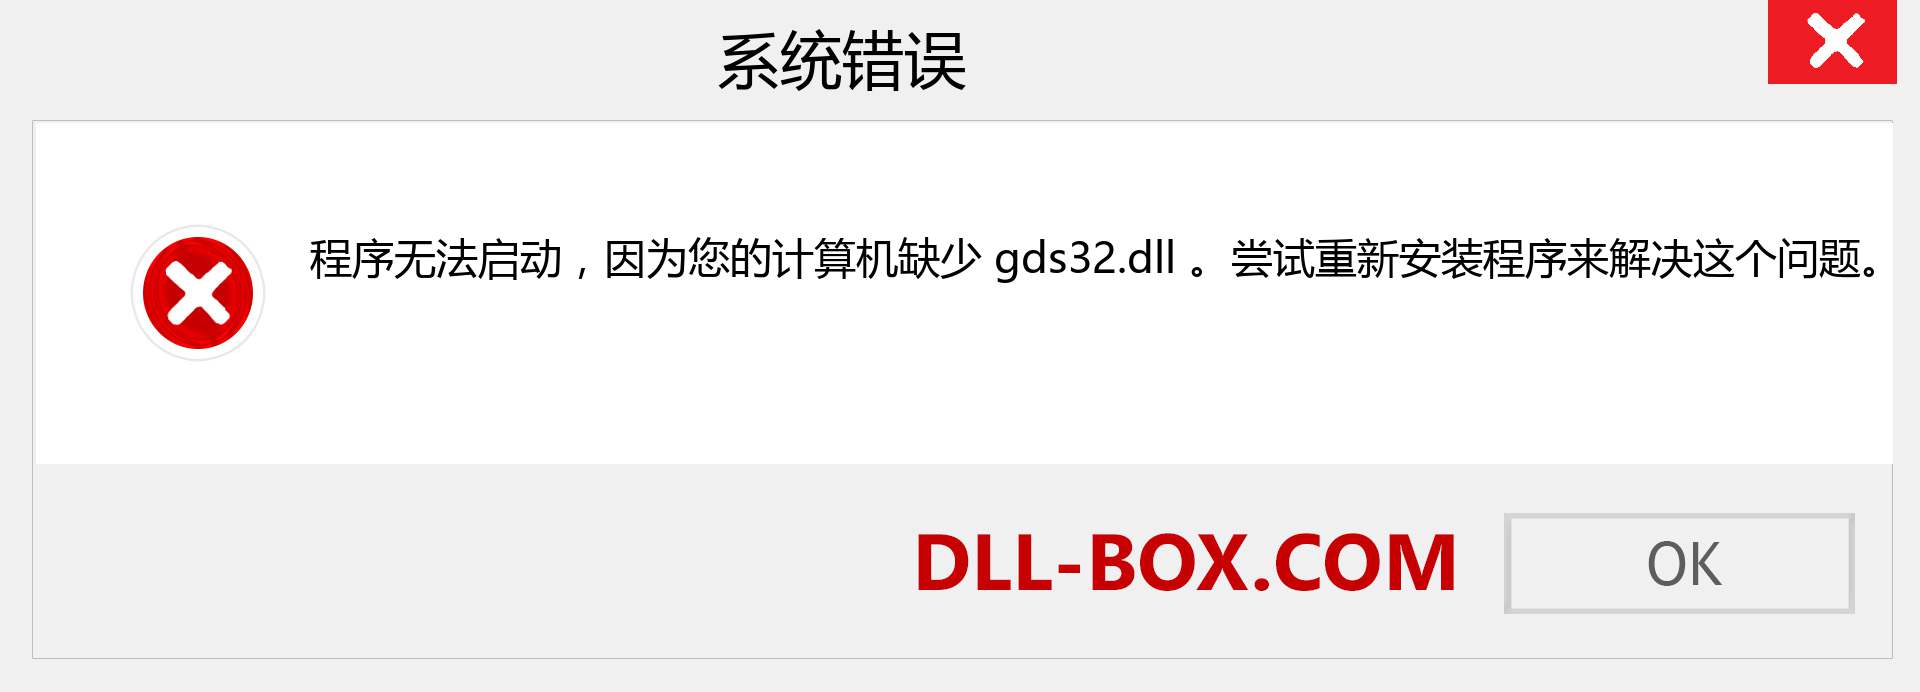 gds32.dll 文件丢失？。 适用于 Windows 7、8、10 的下载 - 修复 Windows、照片、图像上的 gds32 dll 丢失错误